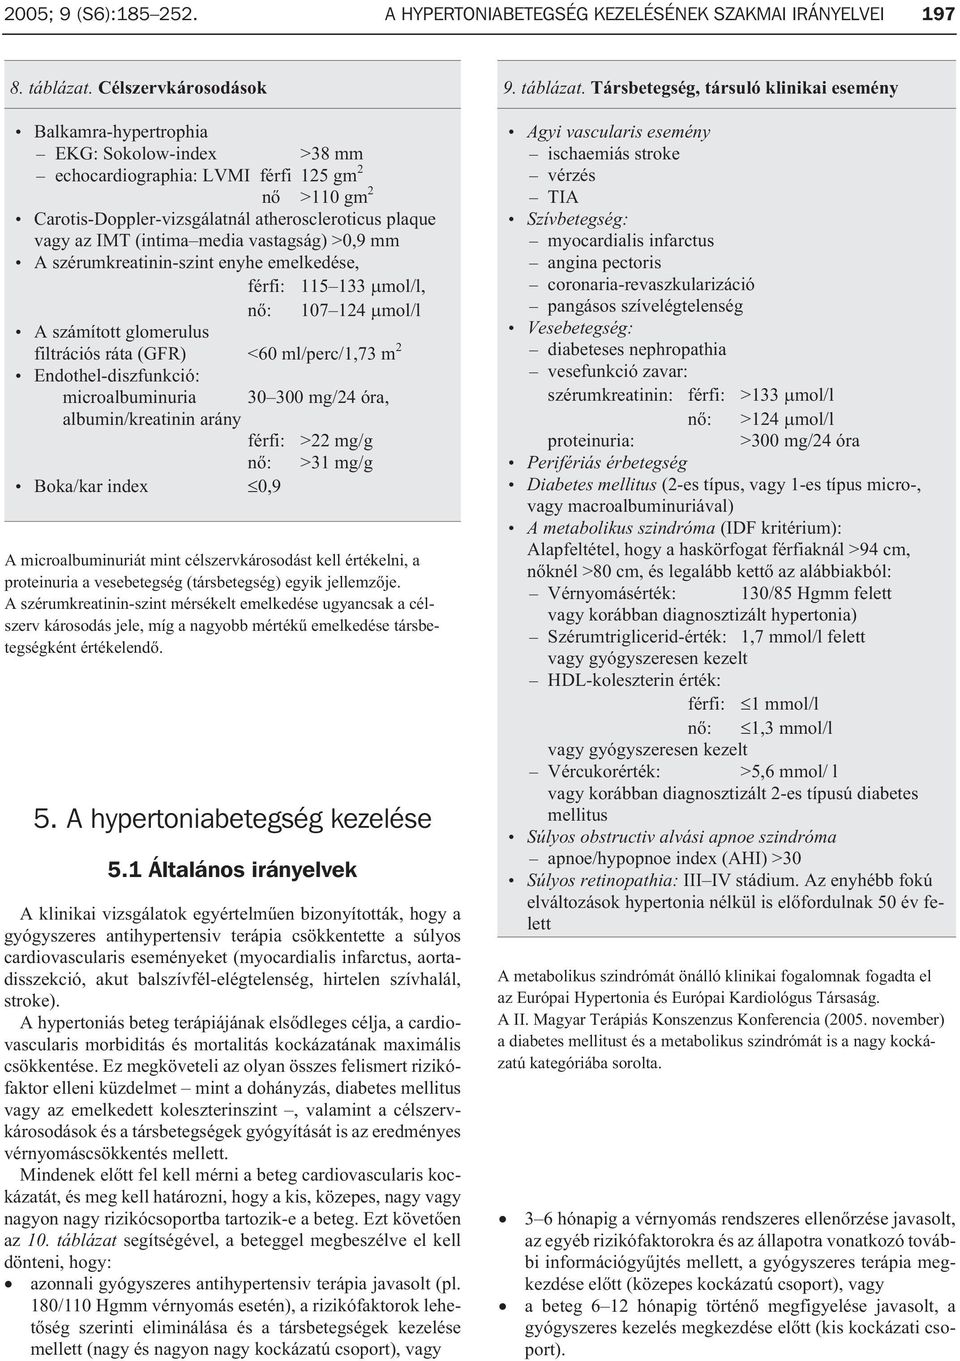 klinikai irányelvek a magas vérnyomás kezelésére)